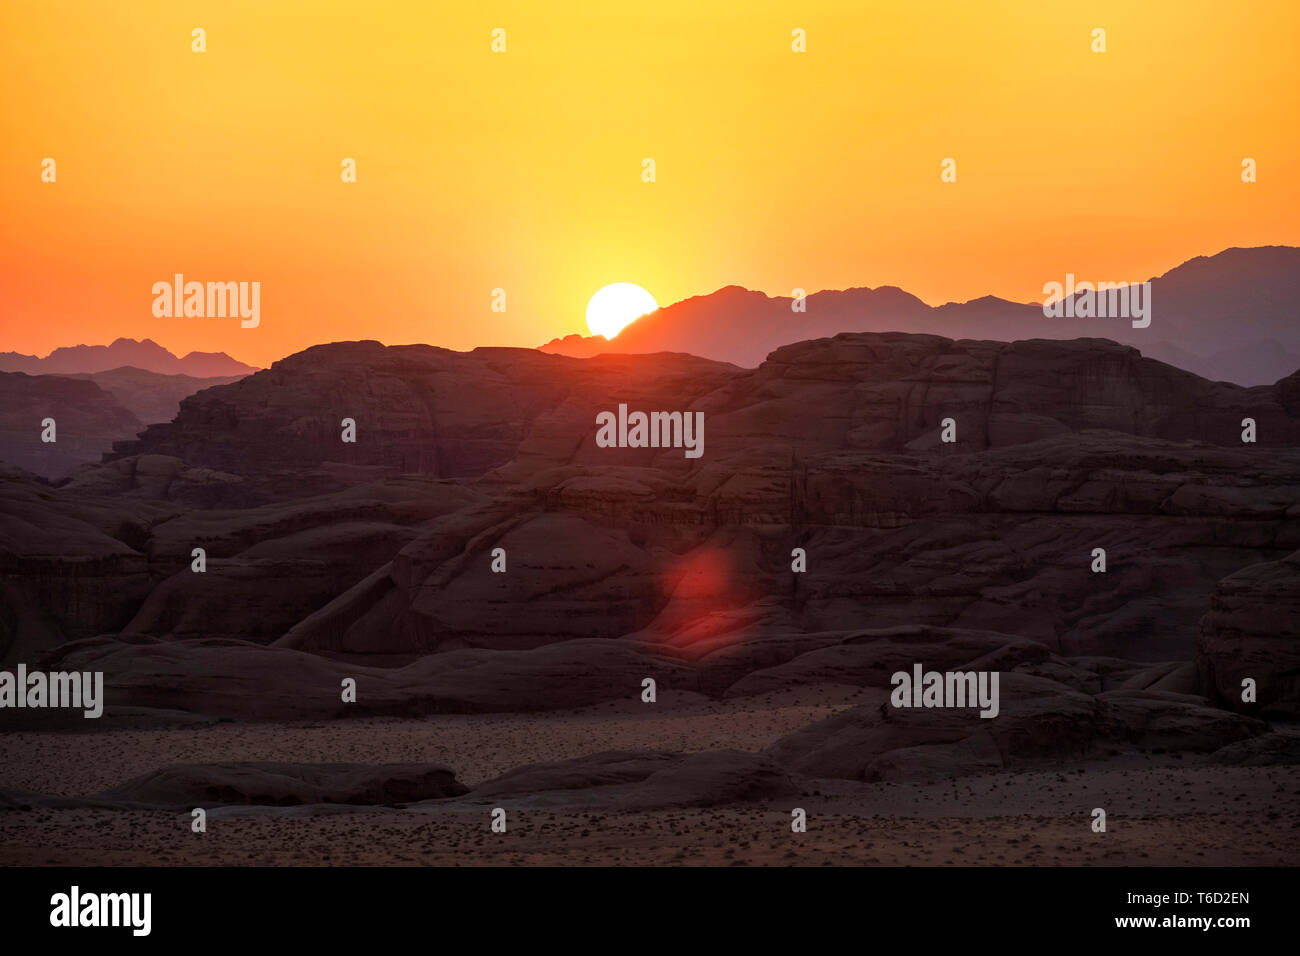 Jordanien, Aqaba Governorate, Wadi Rum. Wadi Rum geschützter Bereich, UNESCO-Weltkulturerbe. Landschaft der Wüste bei Sonnenuntergang. Stockfoto